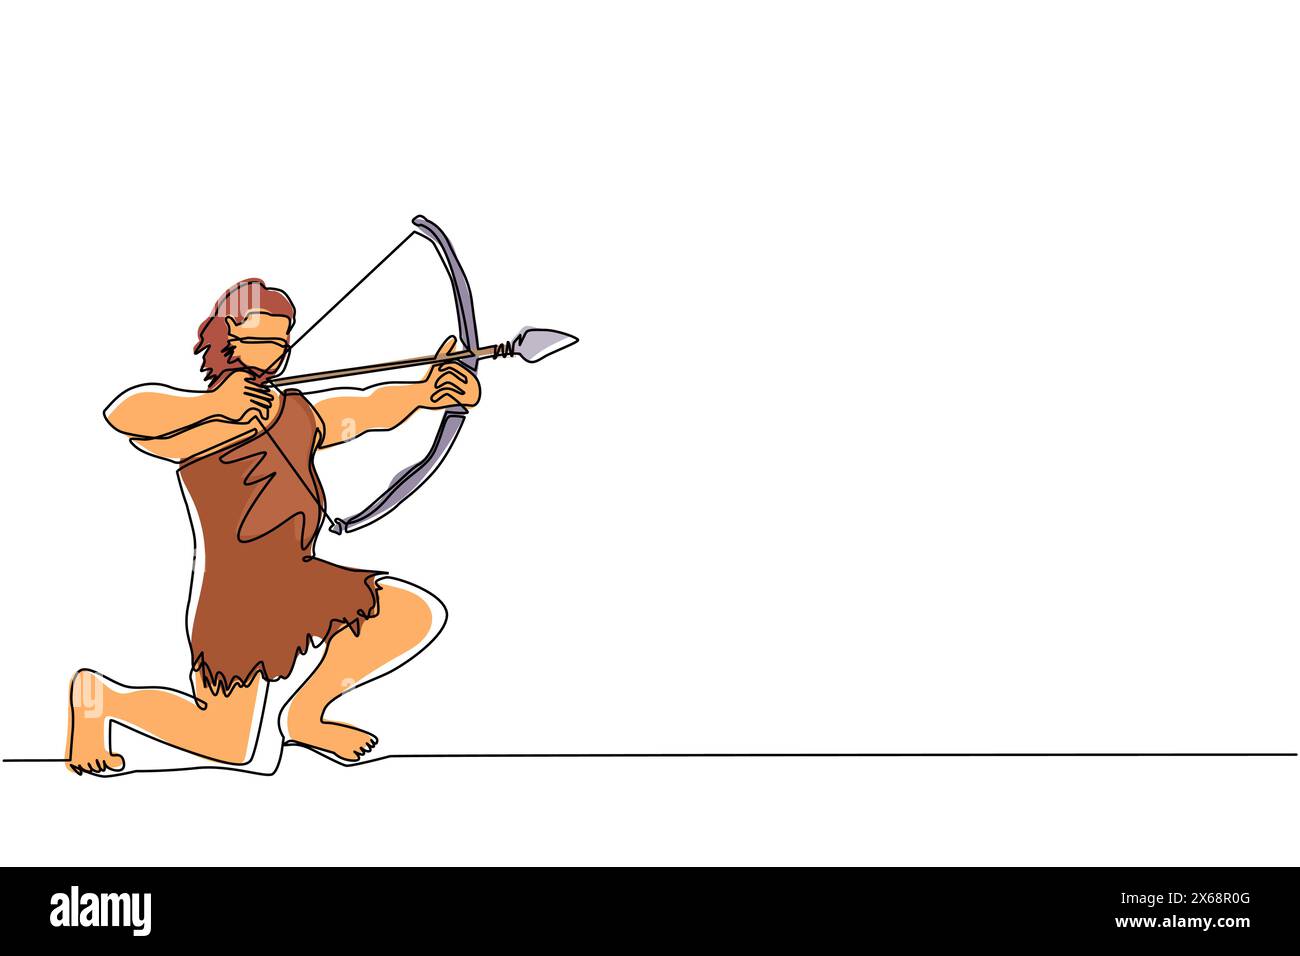 Linea singola continua che disegna una persona primitiva caccia agli animali. Cacciatore dell'età della pietra, uomo a caccia di un antico animale con arco e freccia, uomo di preistoria Illustrazione Vettoriale